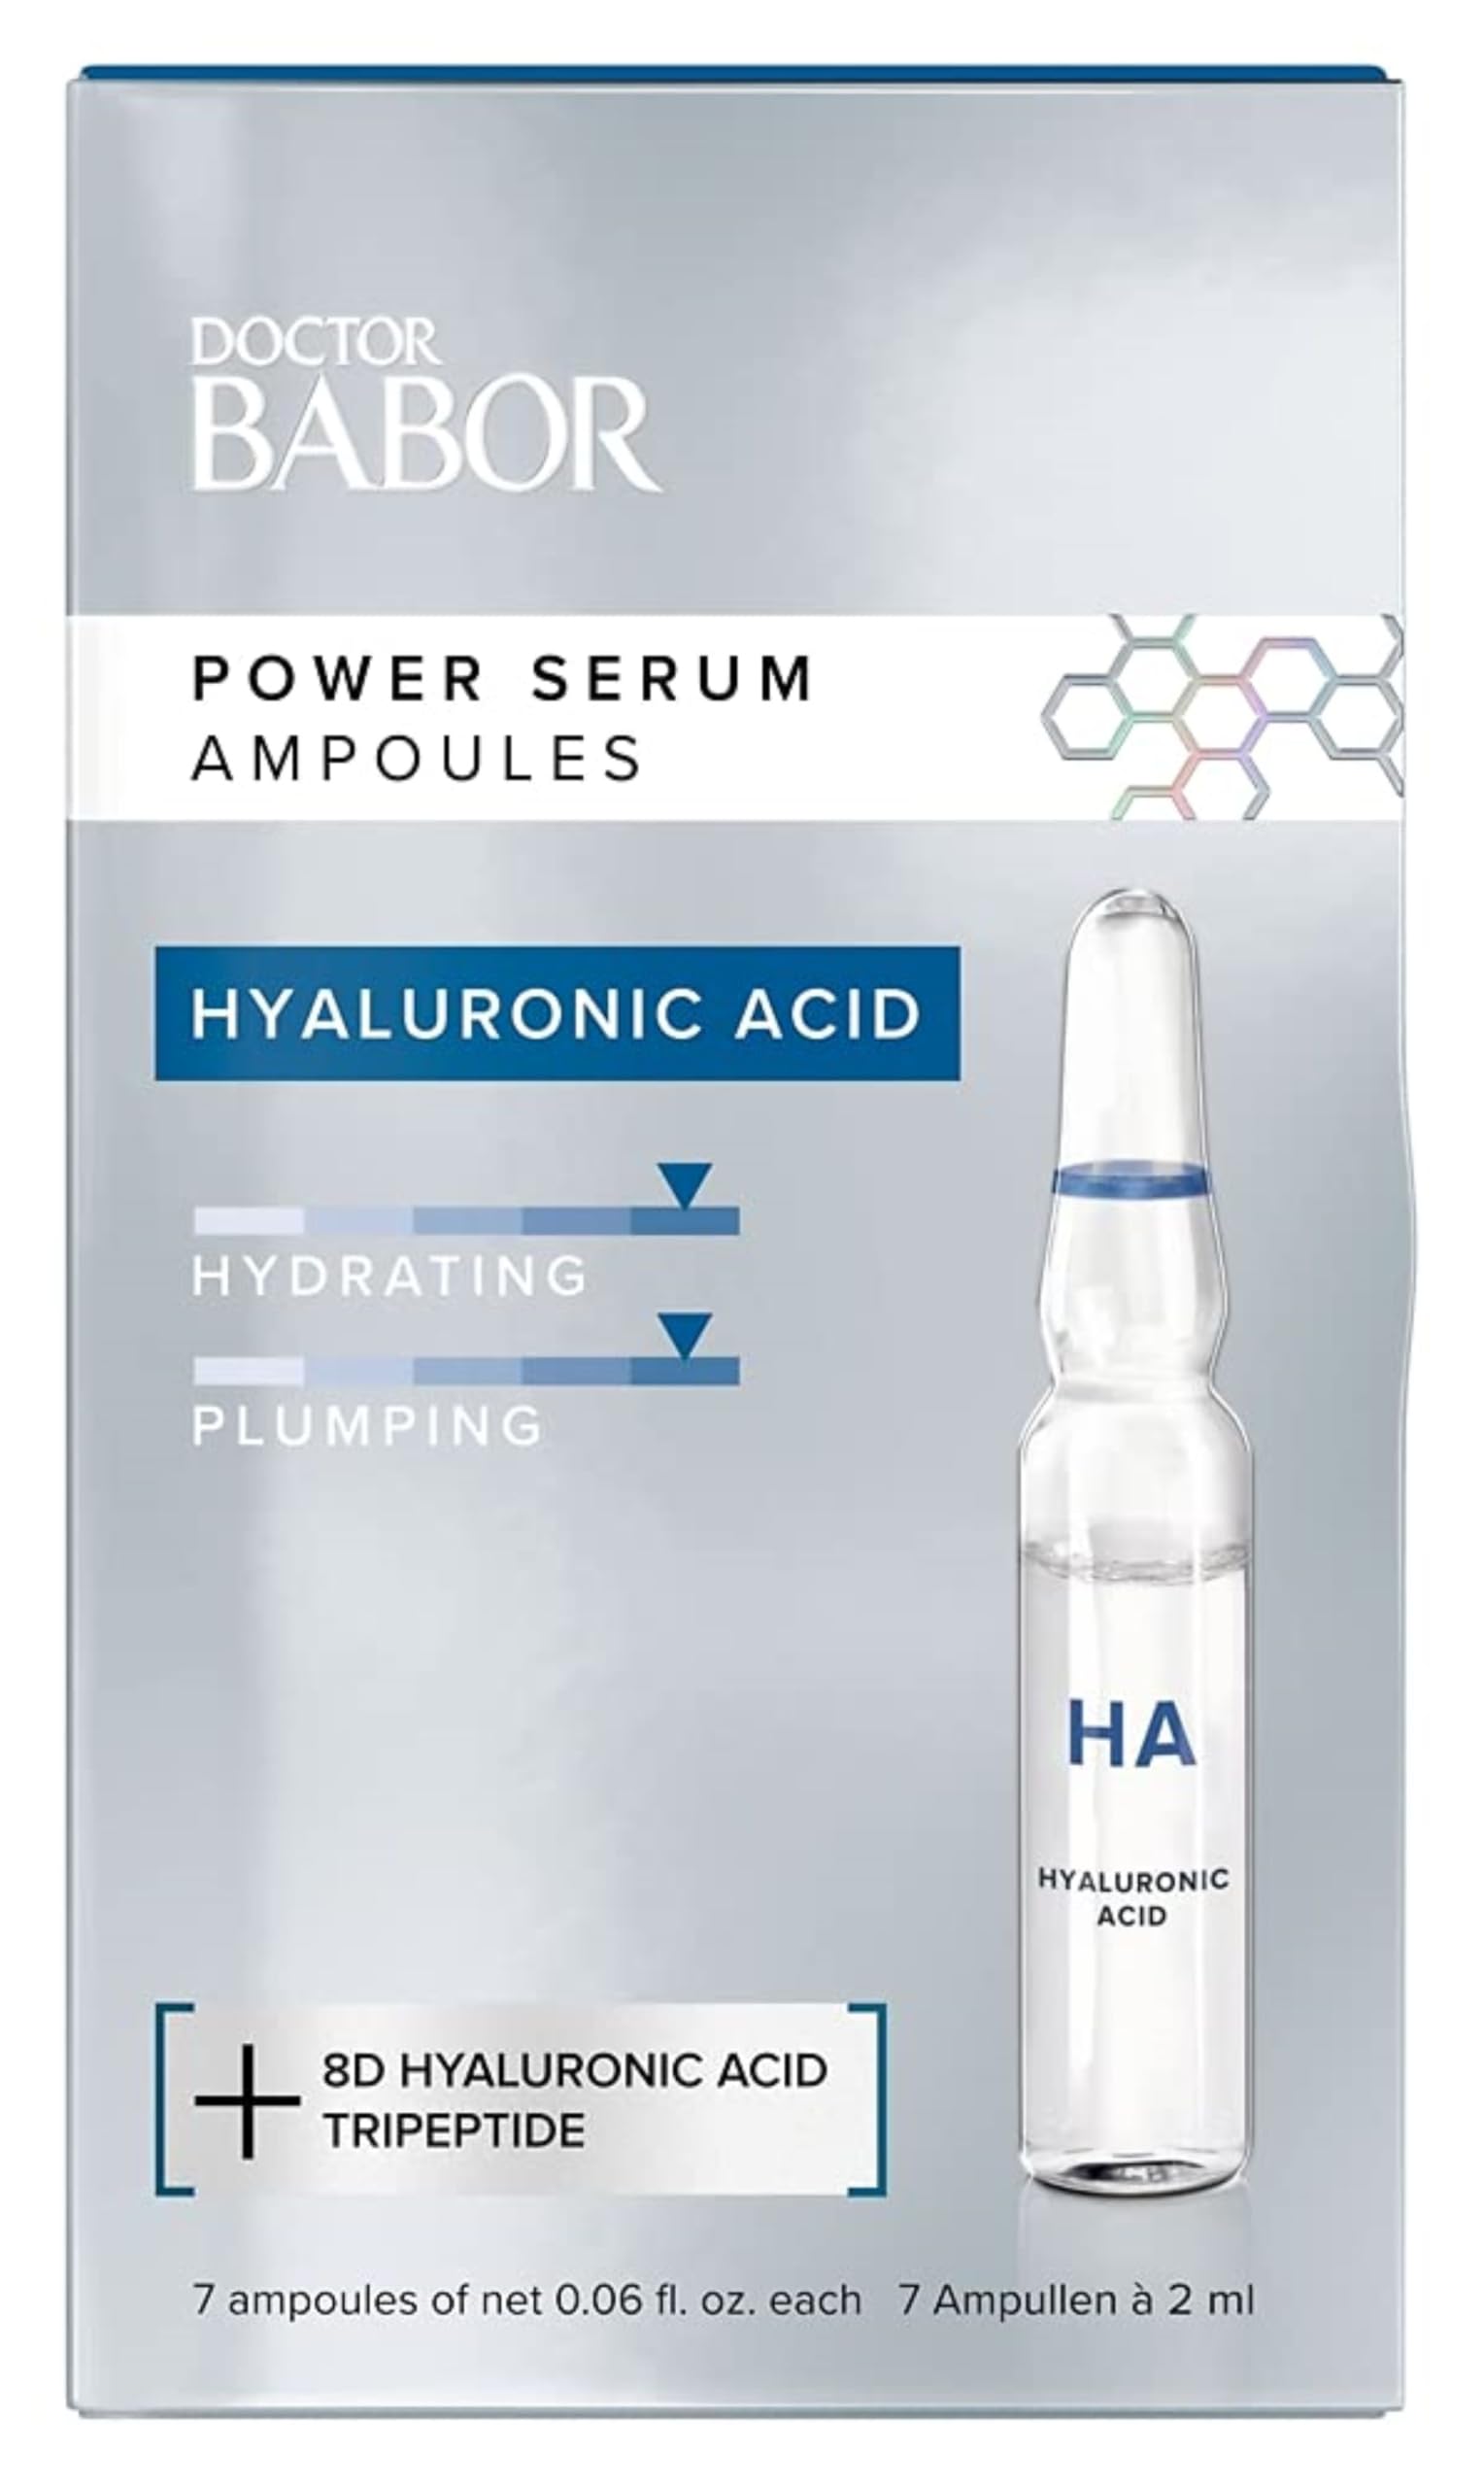 DOCTOR BABOR Power Serum Hyaluronic Acid, Ampullen fürs Gesicht, Hyaluronsäure + Tripeptide für intensive Feuchtigkeit, Vegane Formel,{ 7 x 2 ml } | 7 Stück (1er Pack)